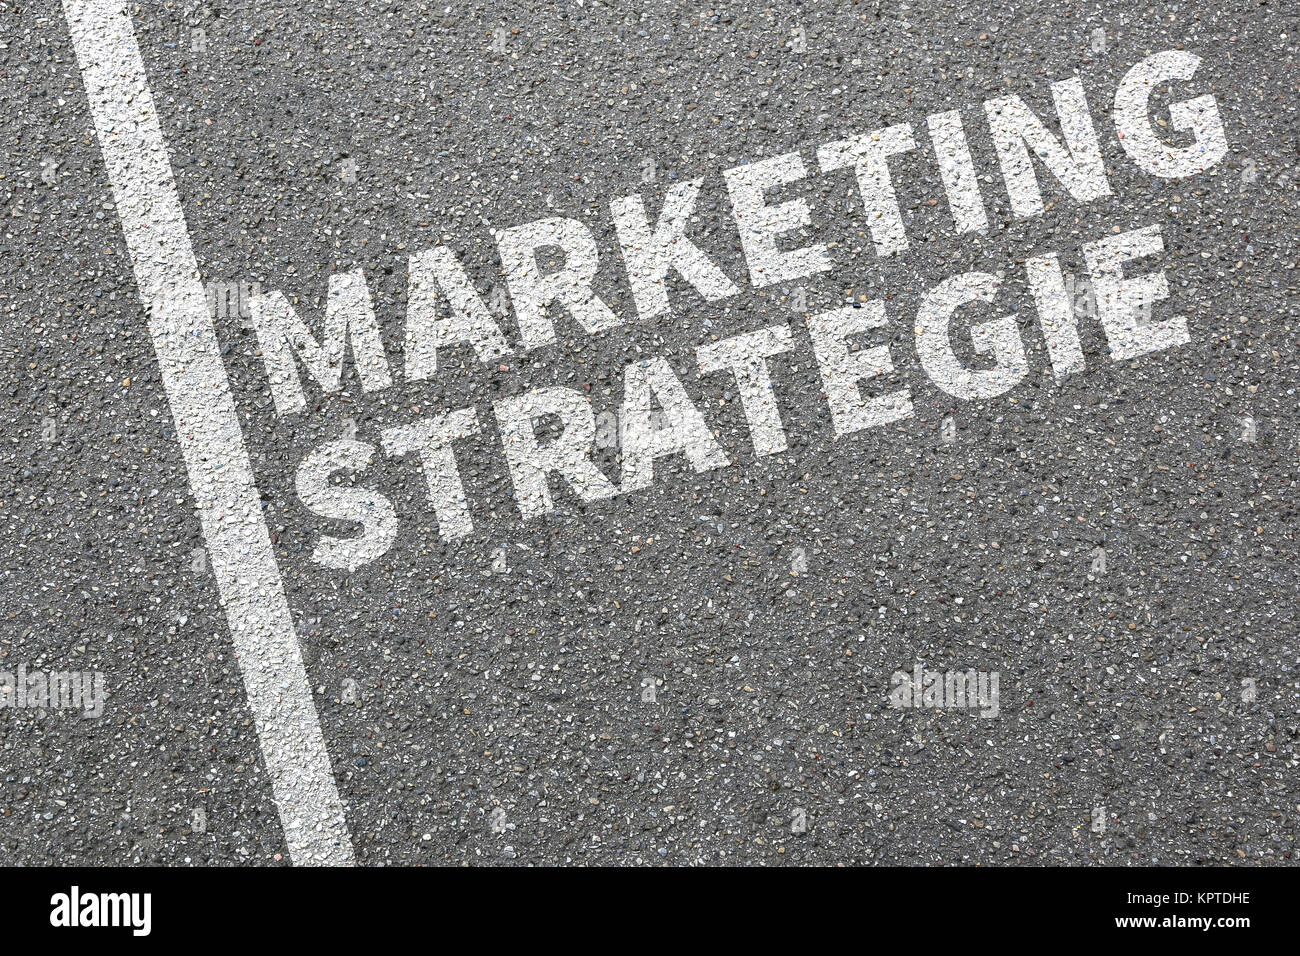 Marketing Strategie Werbung Firma verkaufen Verkauf Business Konzept Erfolg Stock Photo